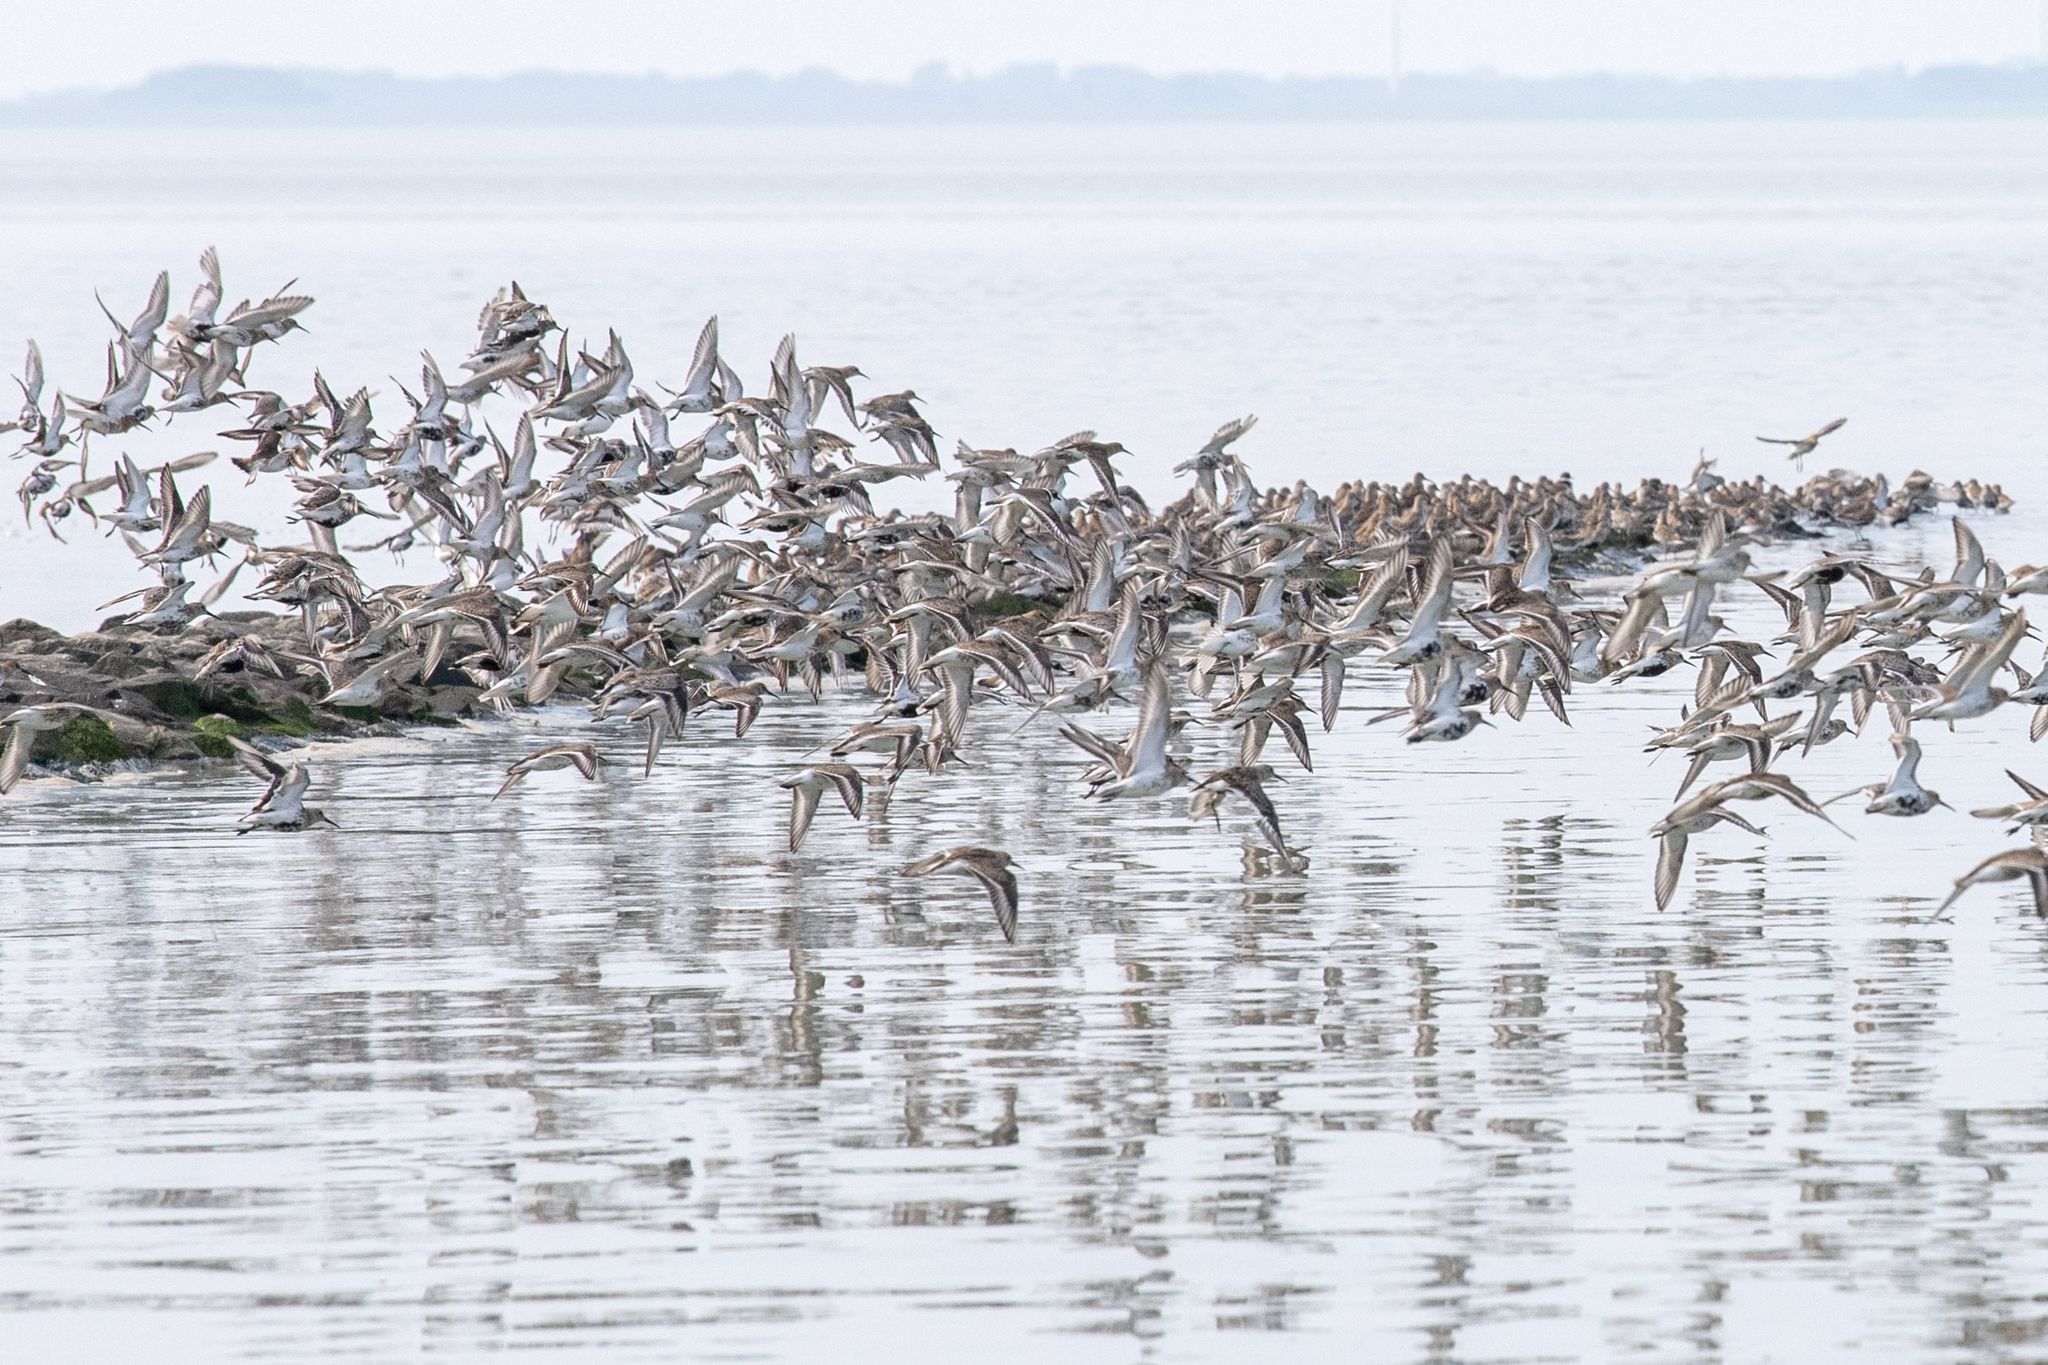 Sandregenpfeifer, Alpenstrandläufer und andere Zugvögel fliegen über das Wattenmeer der Nordseebucht Jadebusen.